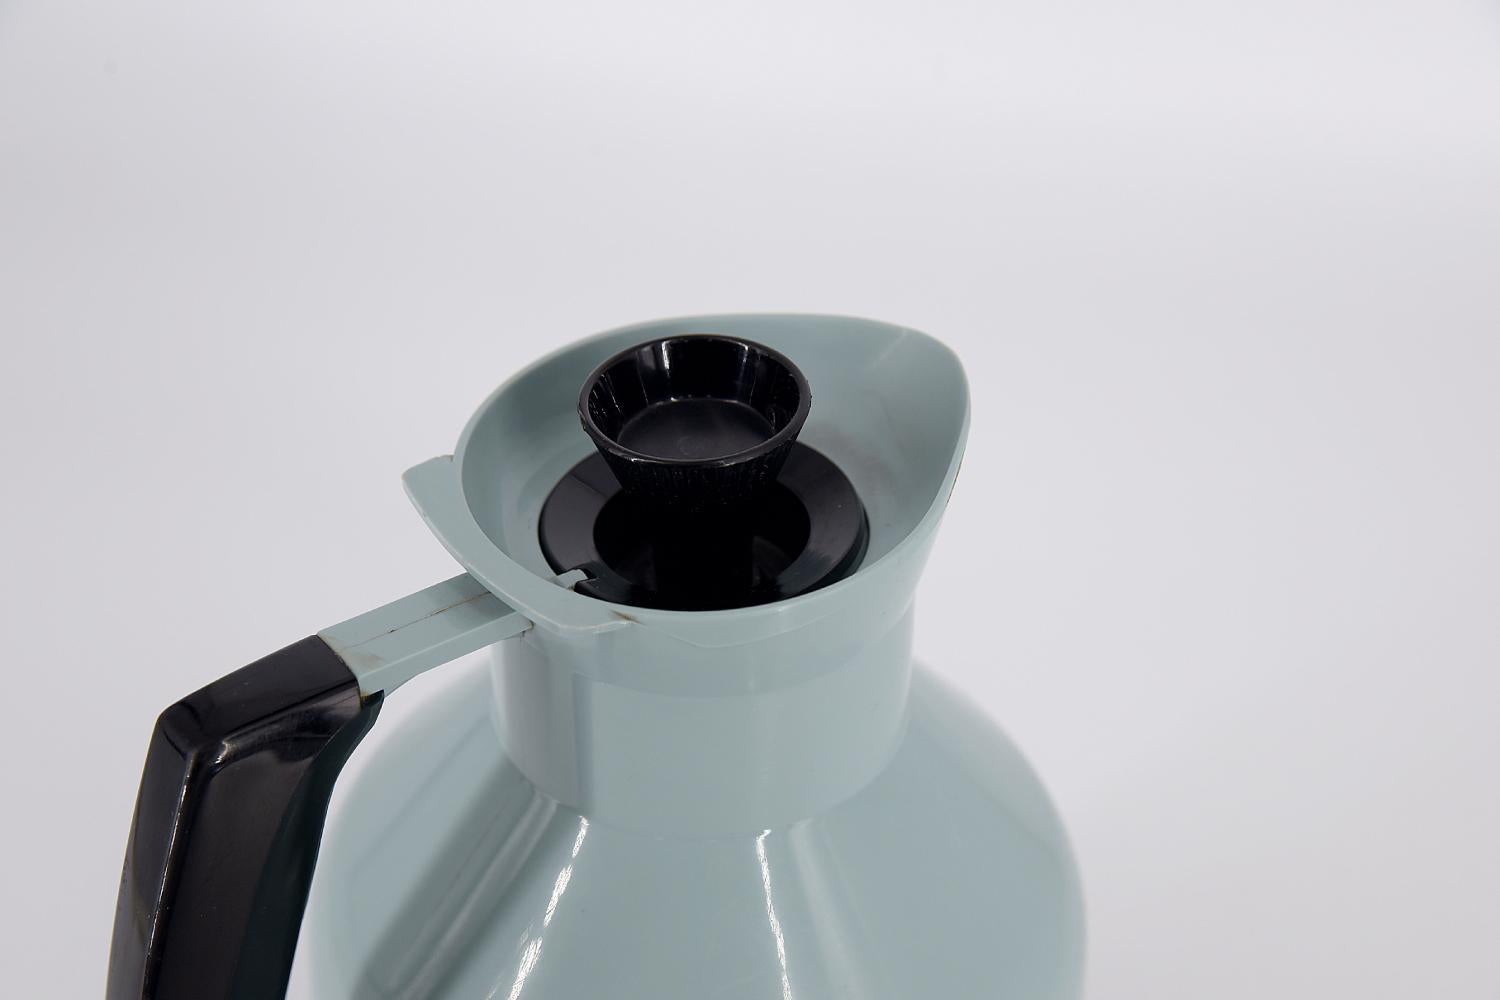 Diese Thermoskanne wurde in den 1960er Jahren von G. Rosendahl für die schwedische Manufaktur Falkenberg entworfen. Thermosflasche aus blauem und schwarzem Kunststoff. Der Griff, der Deckel und der Boden sind schwarz. Der Korken ist so konzipiert,